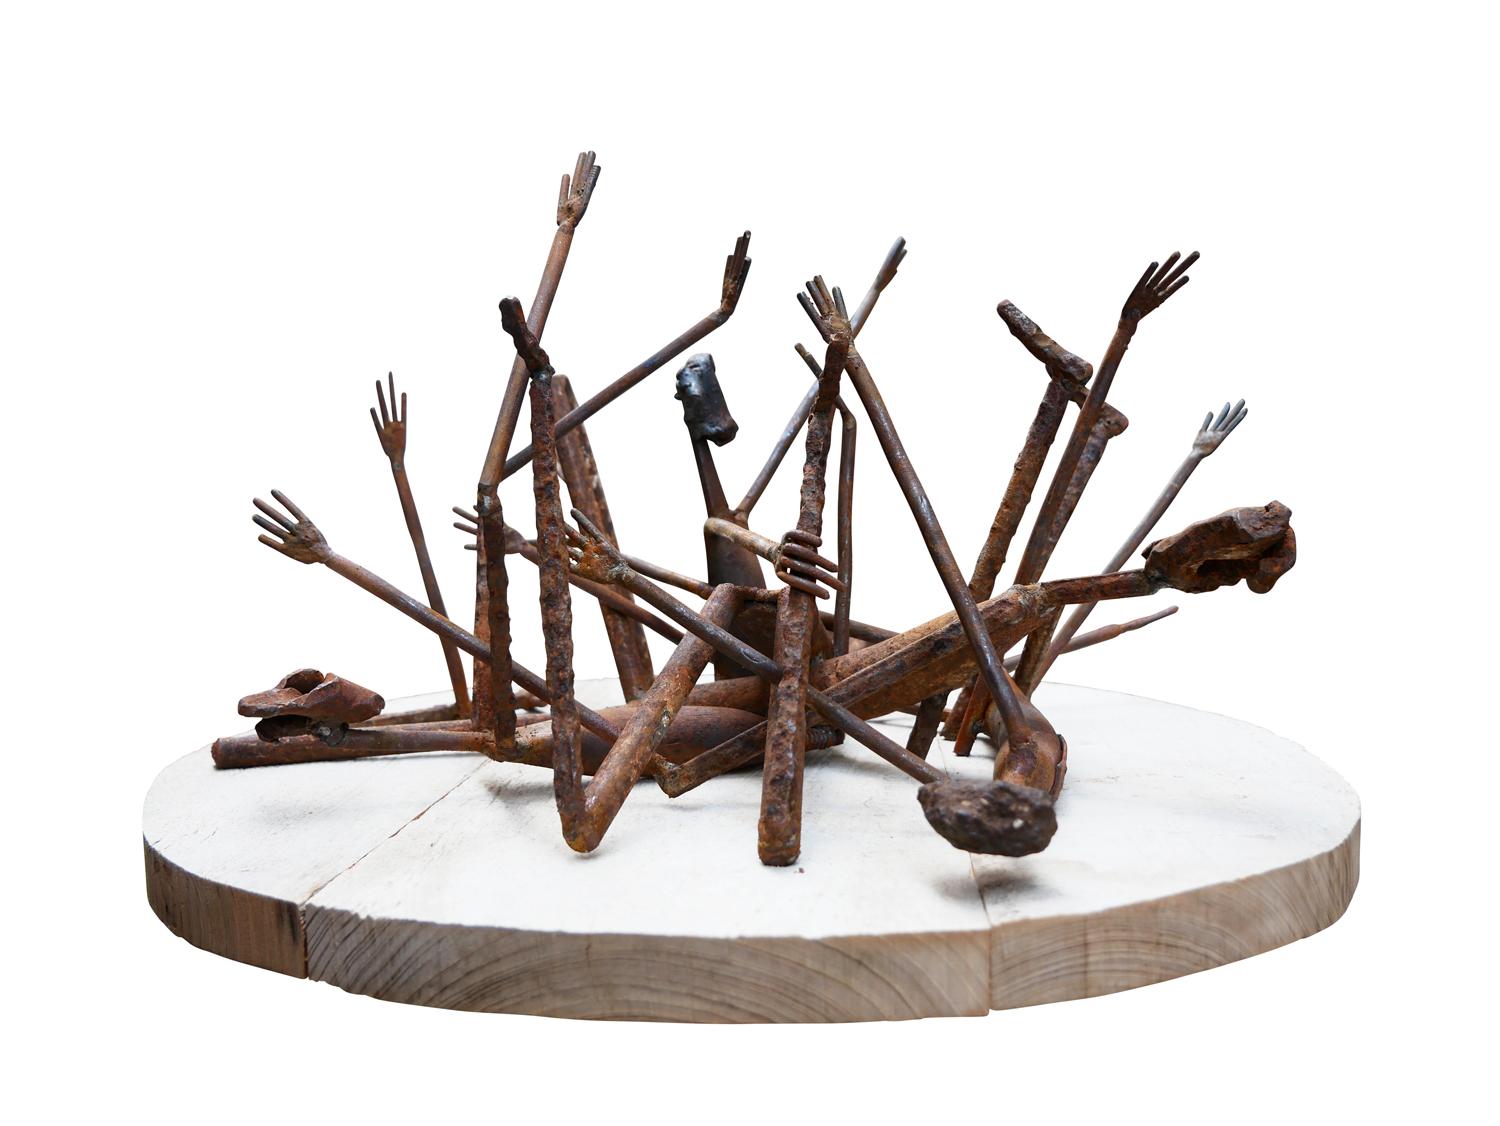 Sculpture figurative abstraite en acier recyclé sur une base en bois de cyprès, réalisée par l'artiste Jack Farrell de Houston, TX. La sculpture représente des personnages allongés sur un socle qui luttent pour se relever. Signé par l'artiste sur la